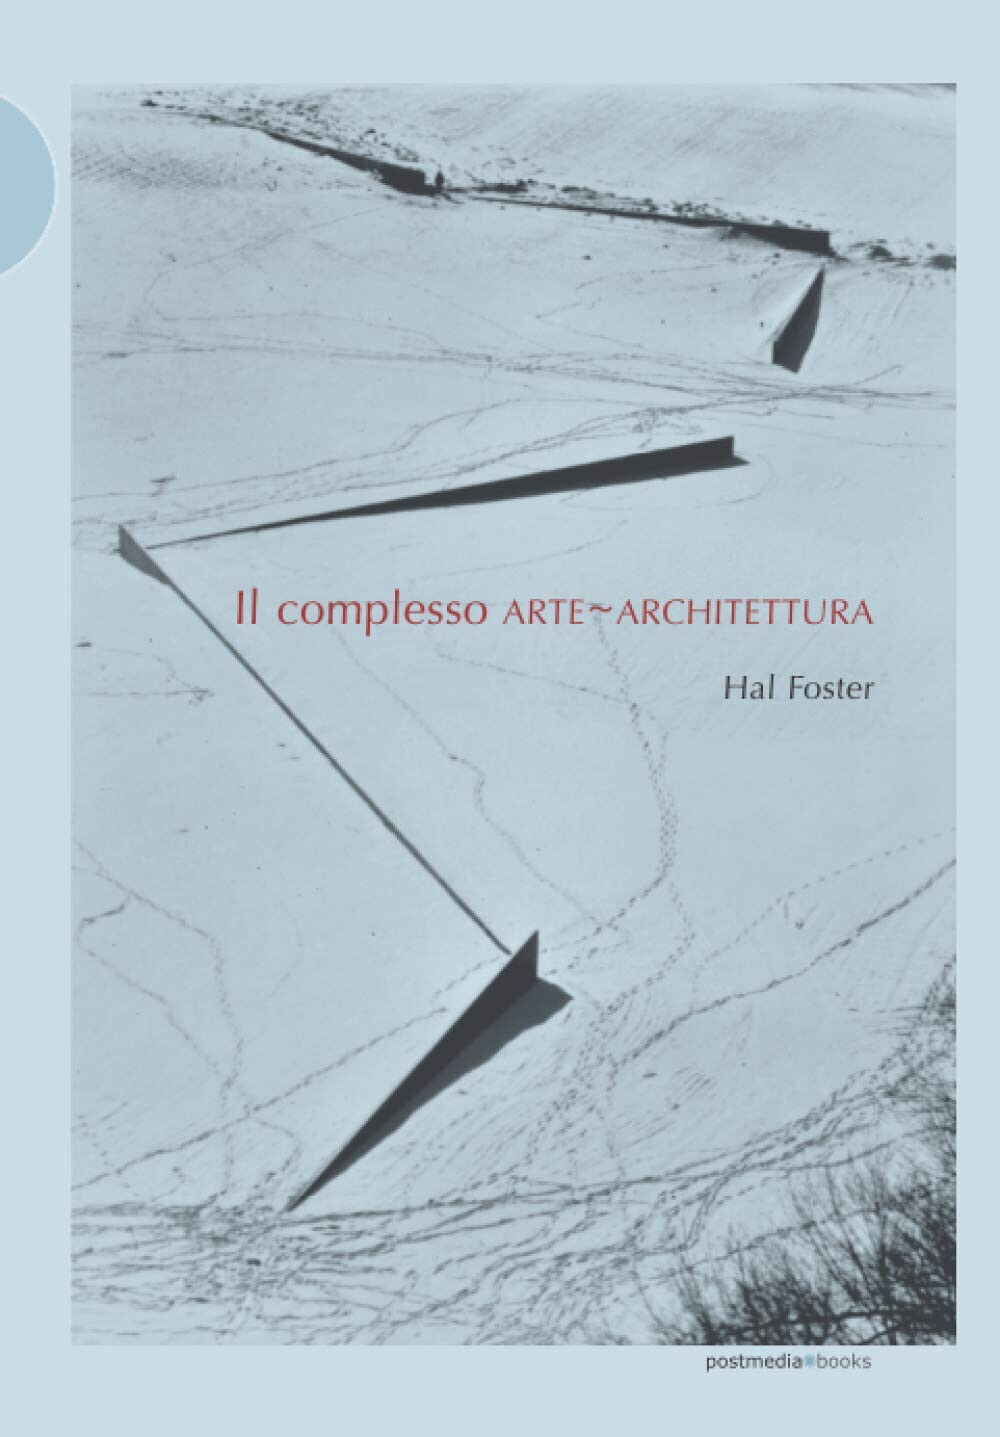 Il complesso arte-architettura. Ediz. illustrata - Hal Foster - Postmedia, 2017